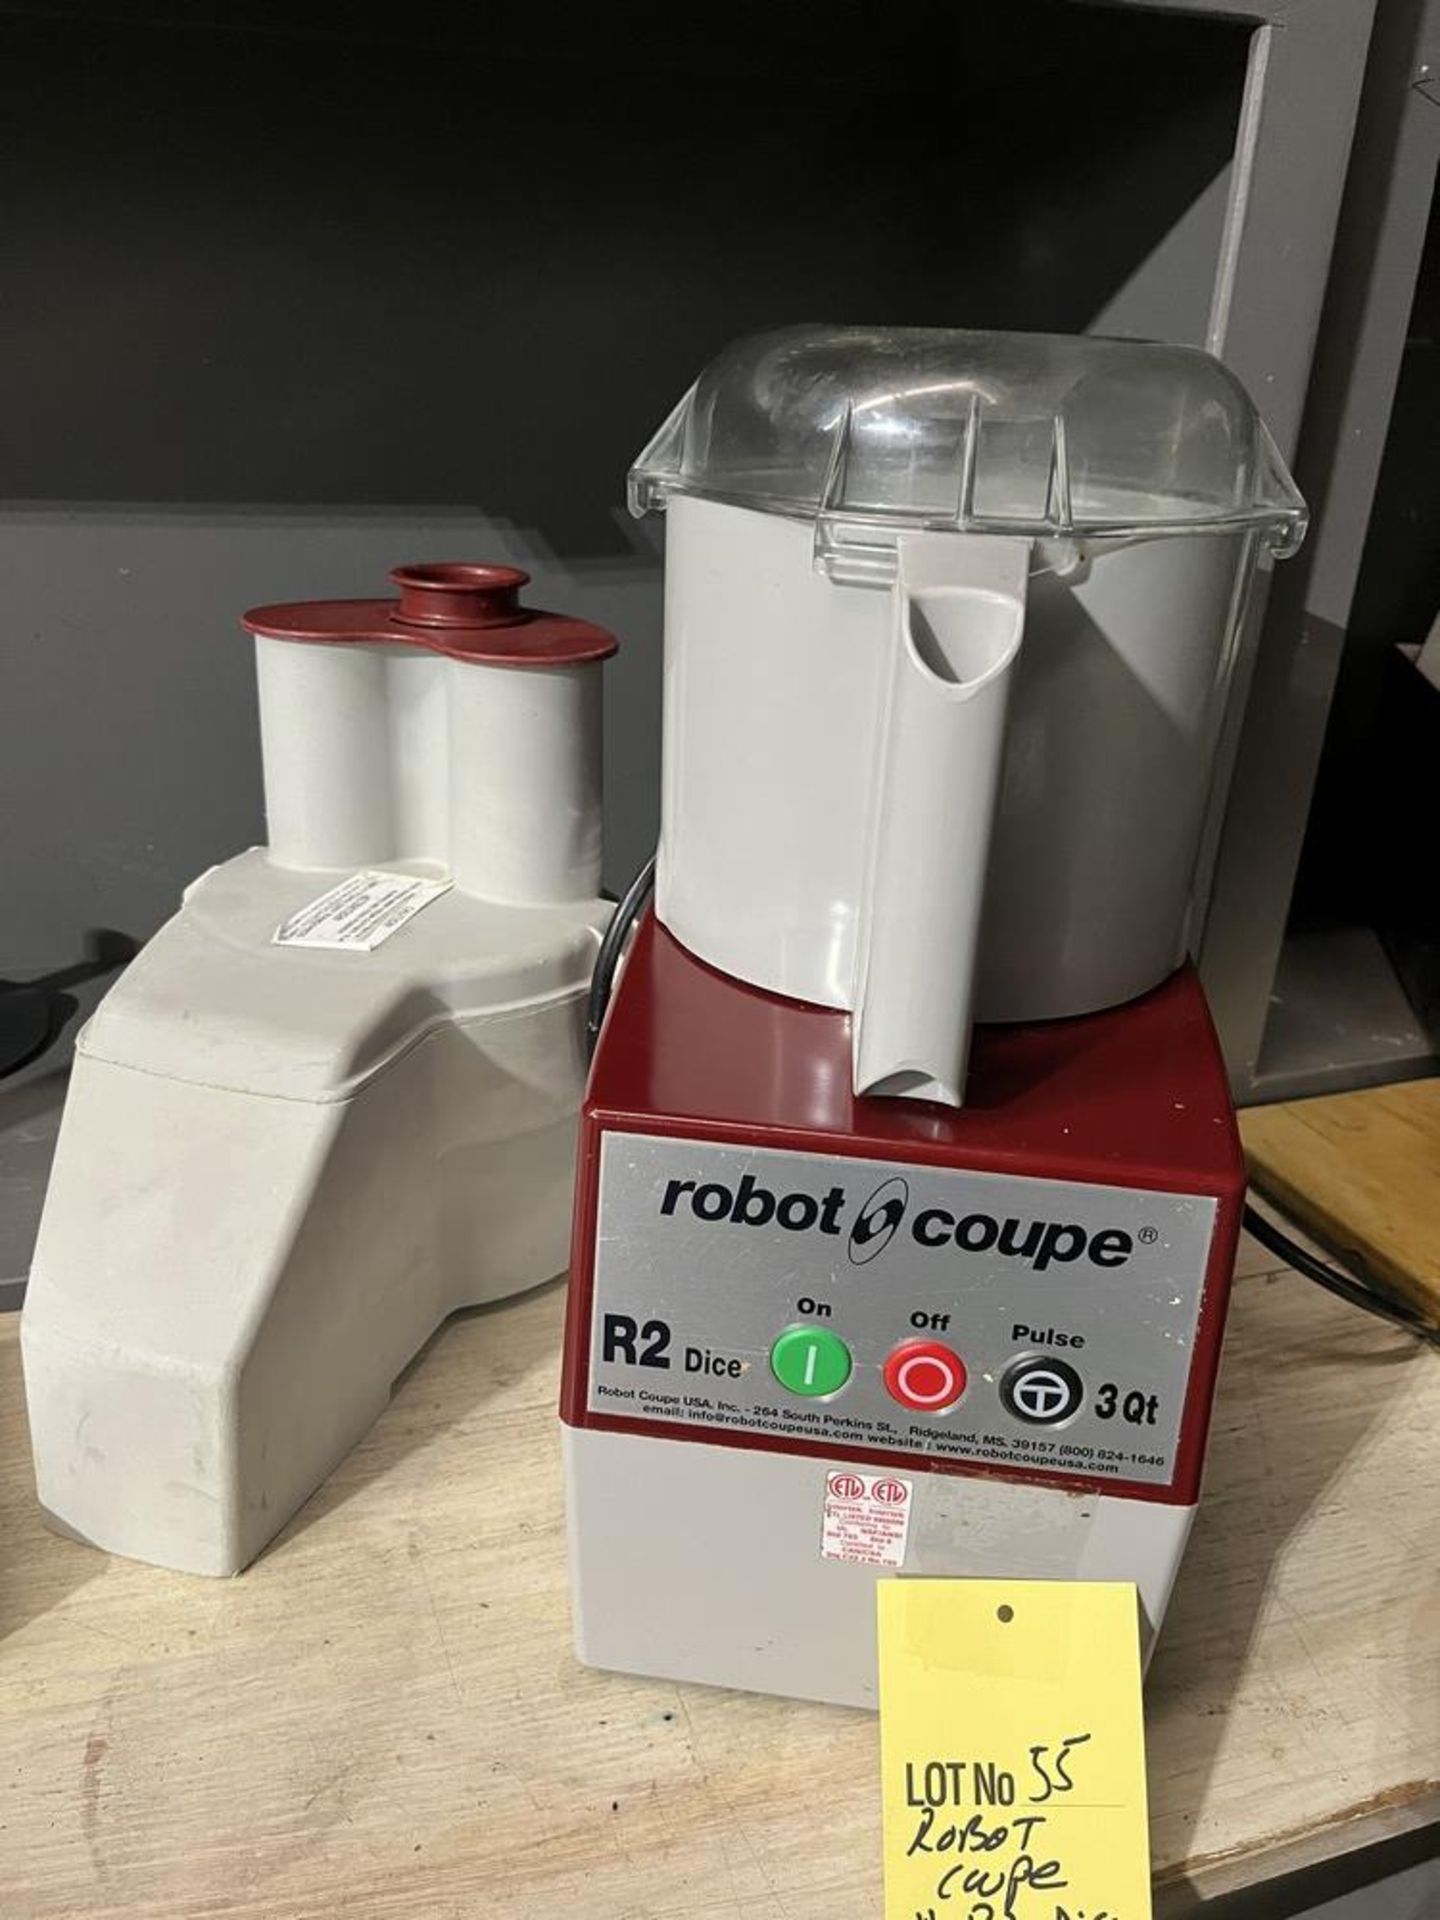 ROBOT COUPE # R2 Dice, 3 Qt. a / 7 lames et 2 têtes